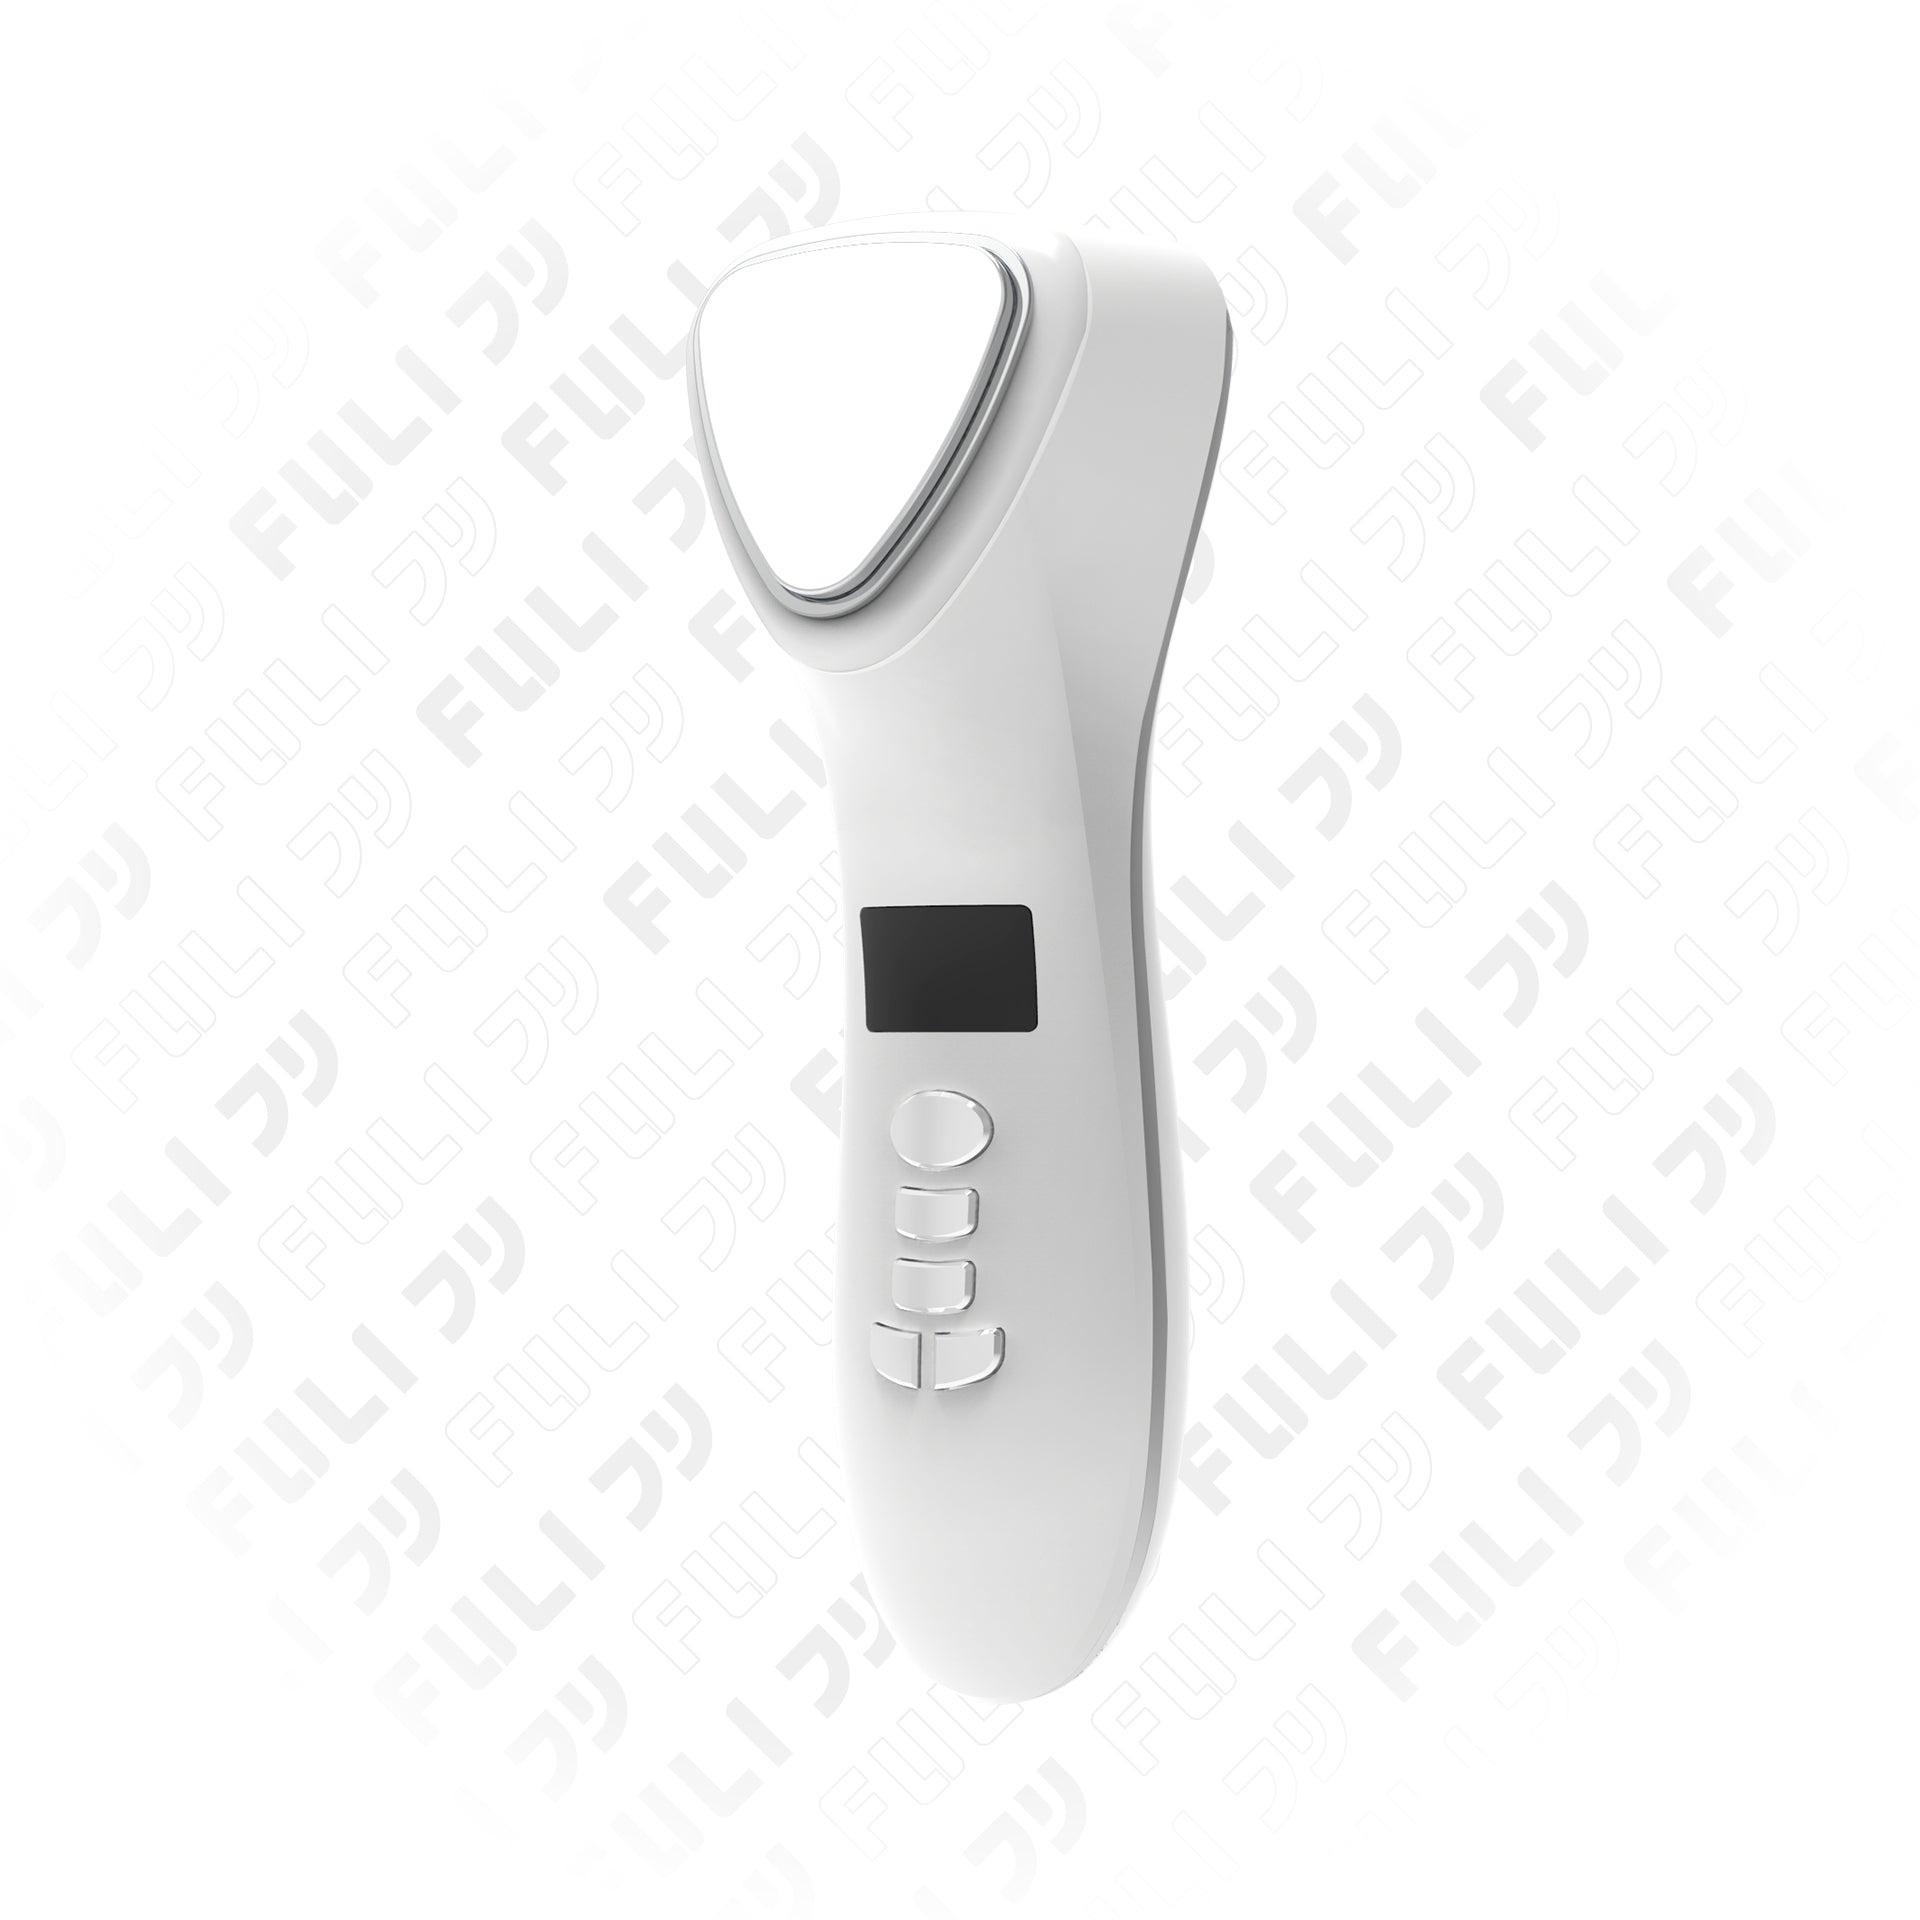 เครื่องสปาผิวแบบร้อนและเย็น | FULI Smart Hot and Cold Ultrasonic Facial Treatment Device